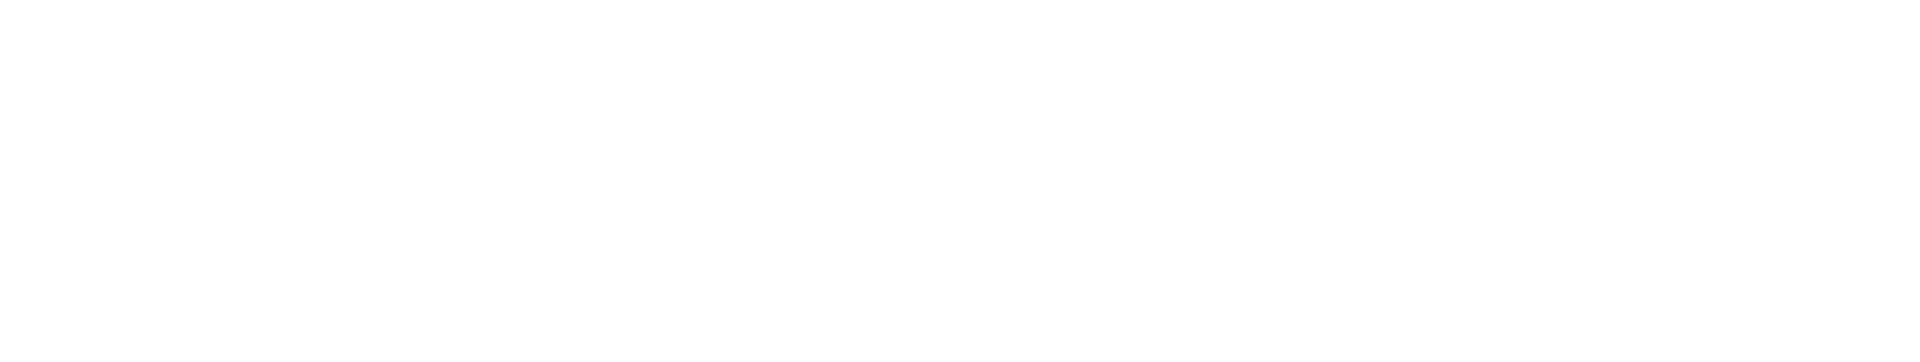 Buckshot Roulette Multiplayer